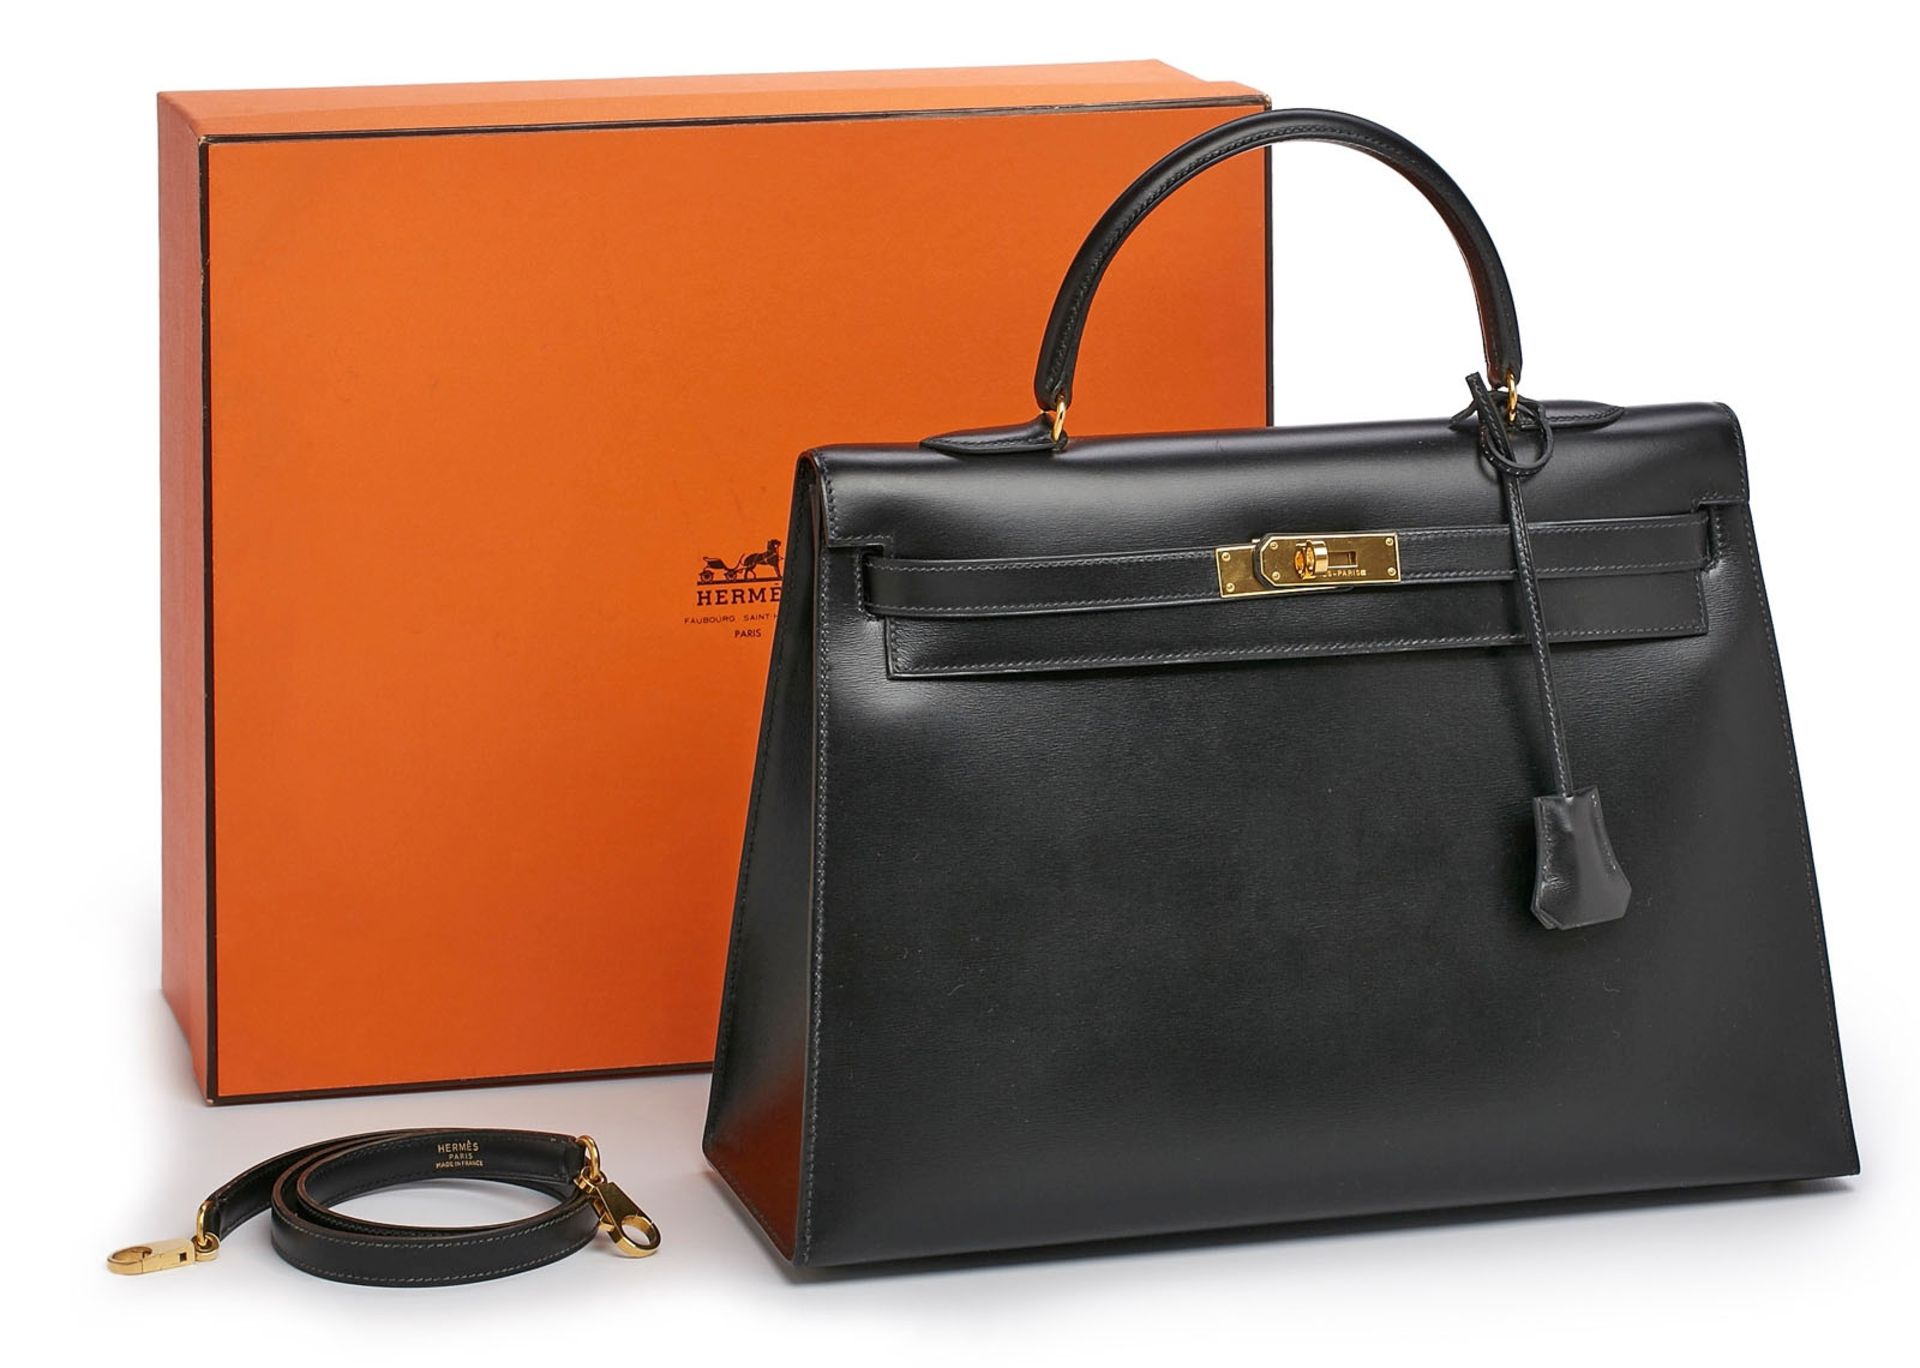 Handtasche "Kelly Bag", Hermès 1992. - Bild 6 aus 7